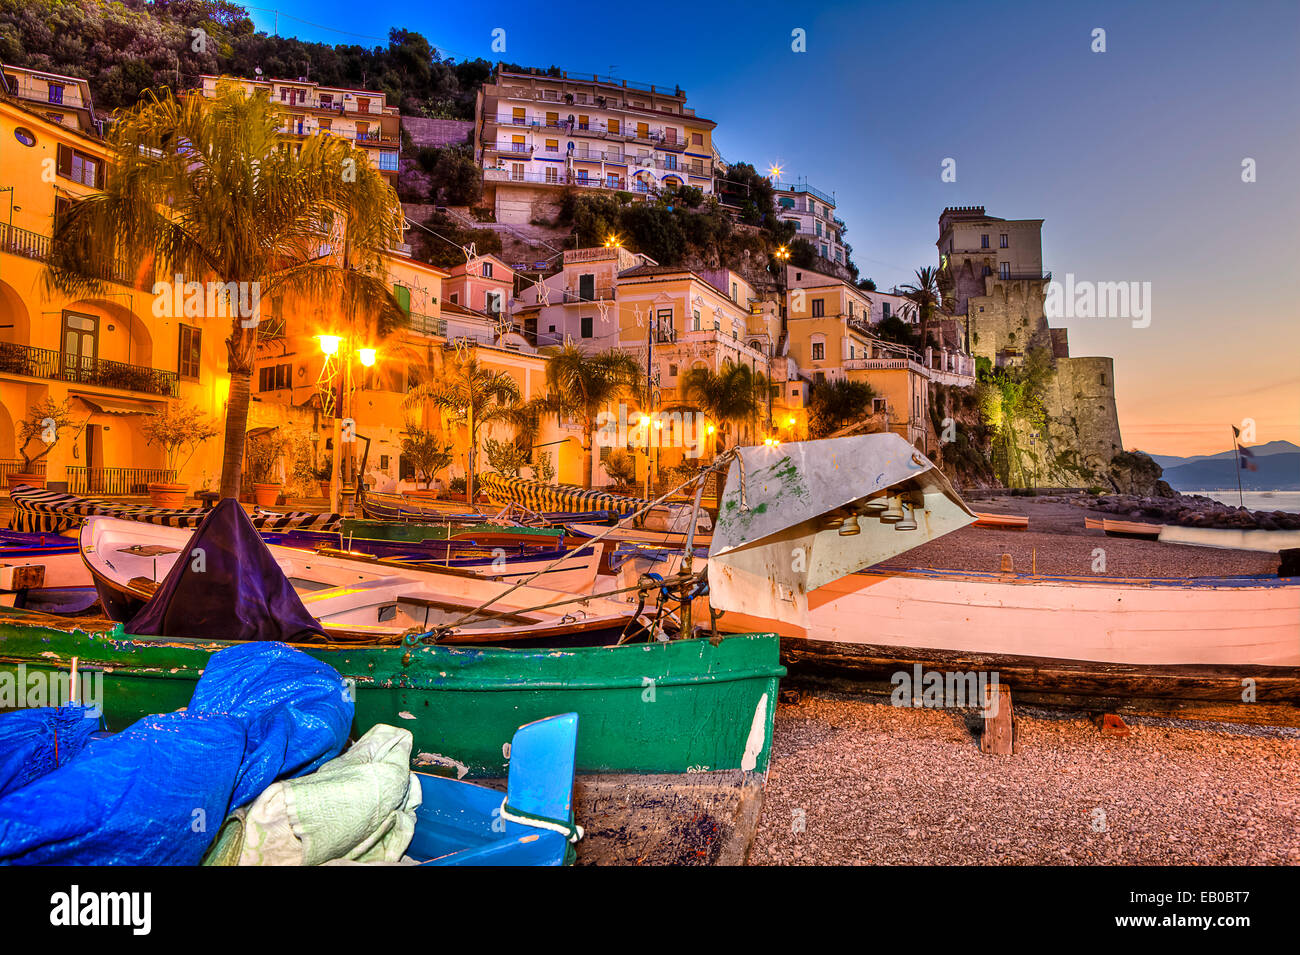 Cetara, fishing village amalfi coast, sunrise Stock Photo